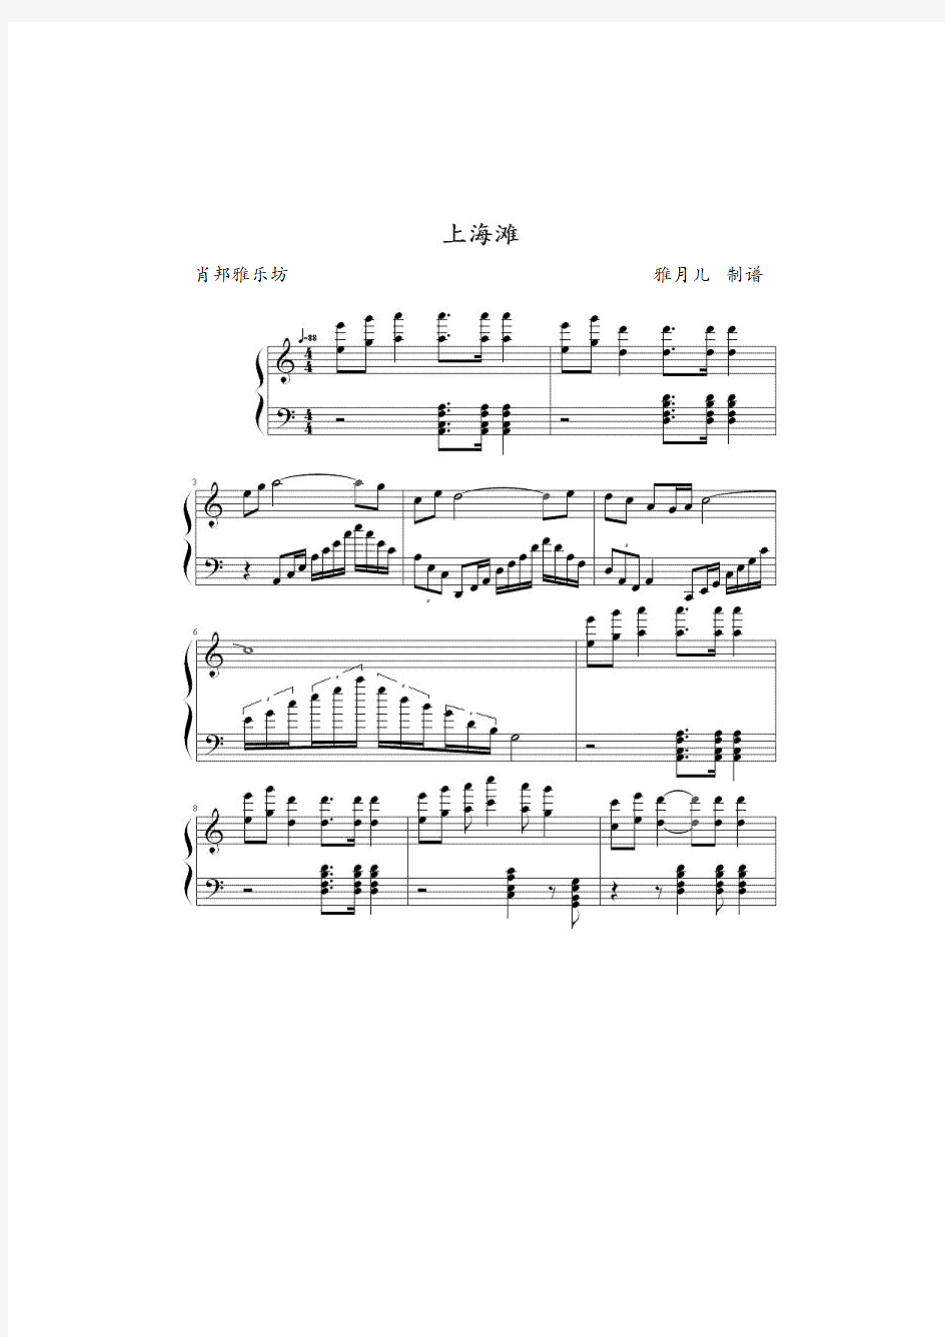 上海滩-钢琴谱-五线谱-独奏版+简易版-双版本-5P